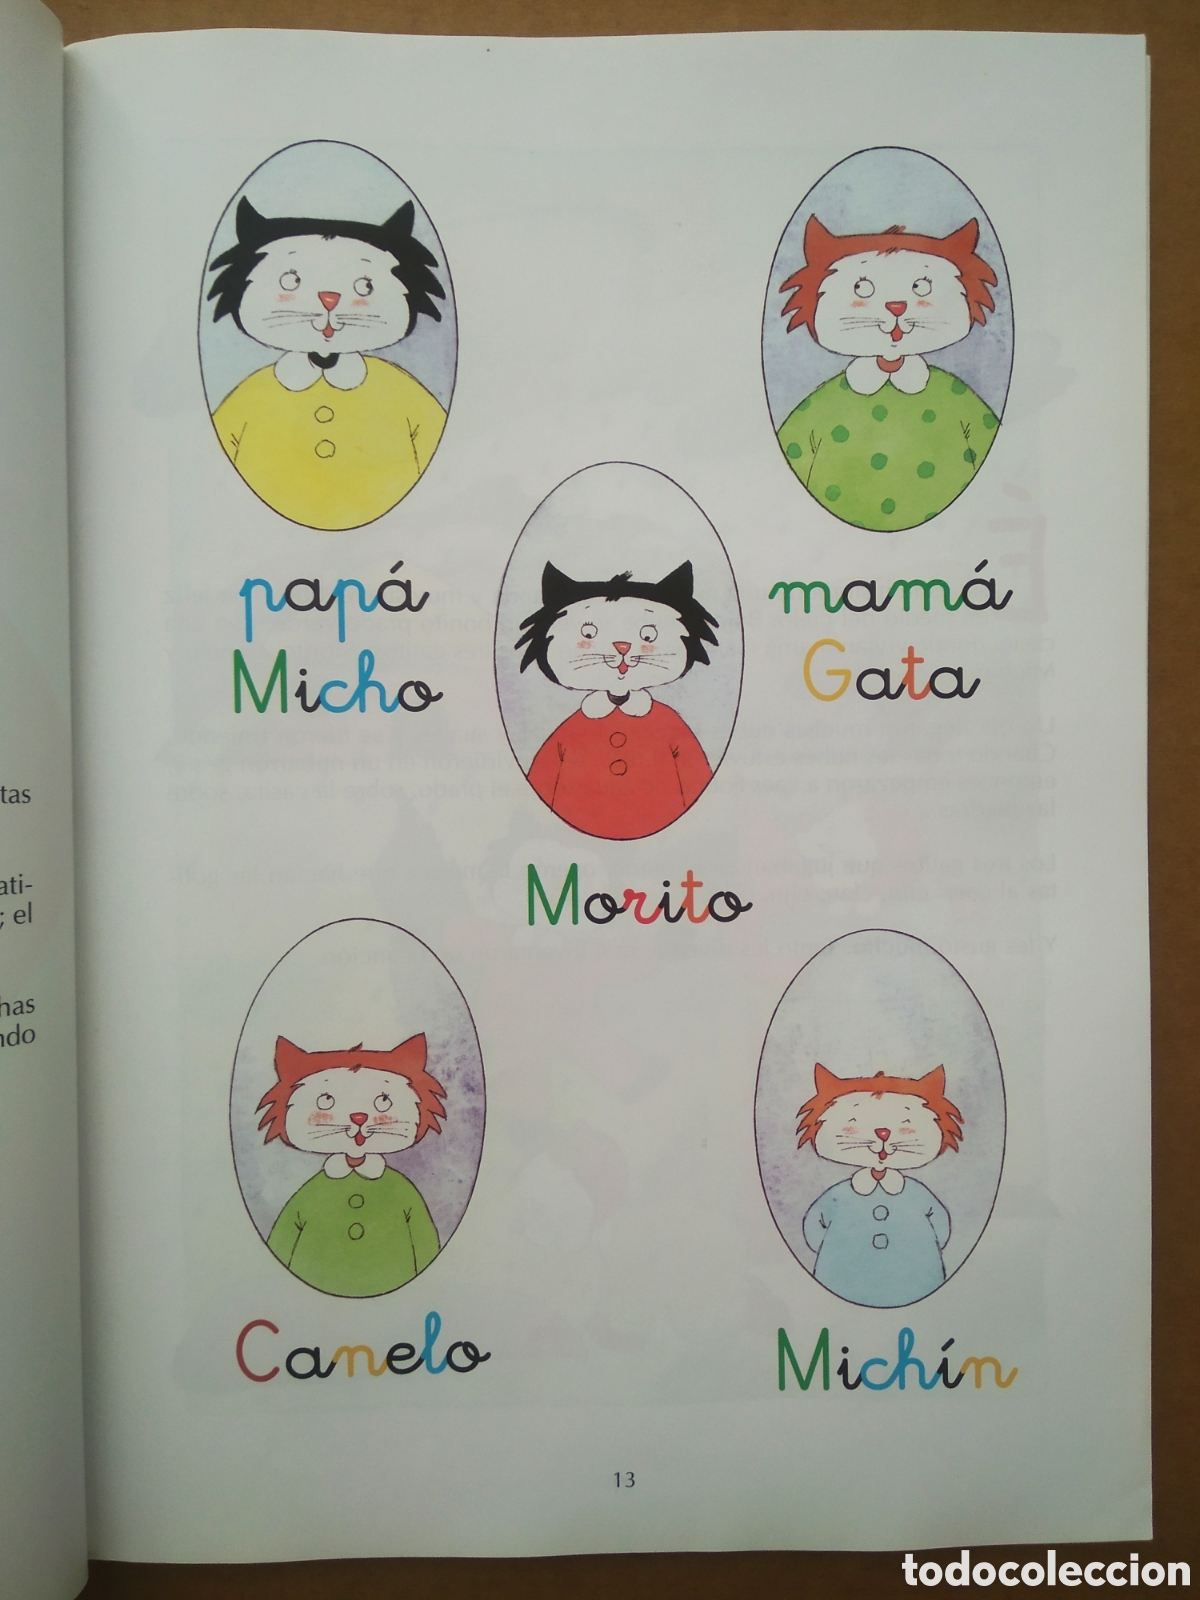 Micho 1 Edición Renovada/Método de Lectura Castellana (Bruño, 2014).  Ilustraciones: Carmen de Andrés